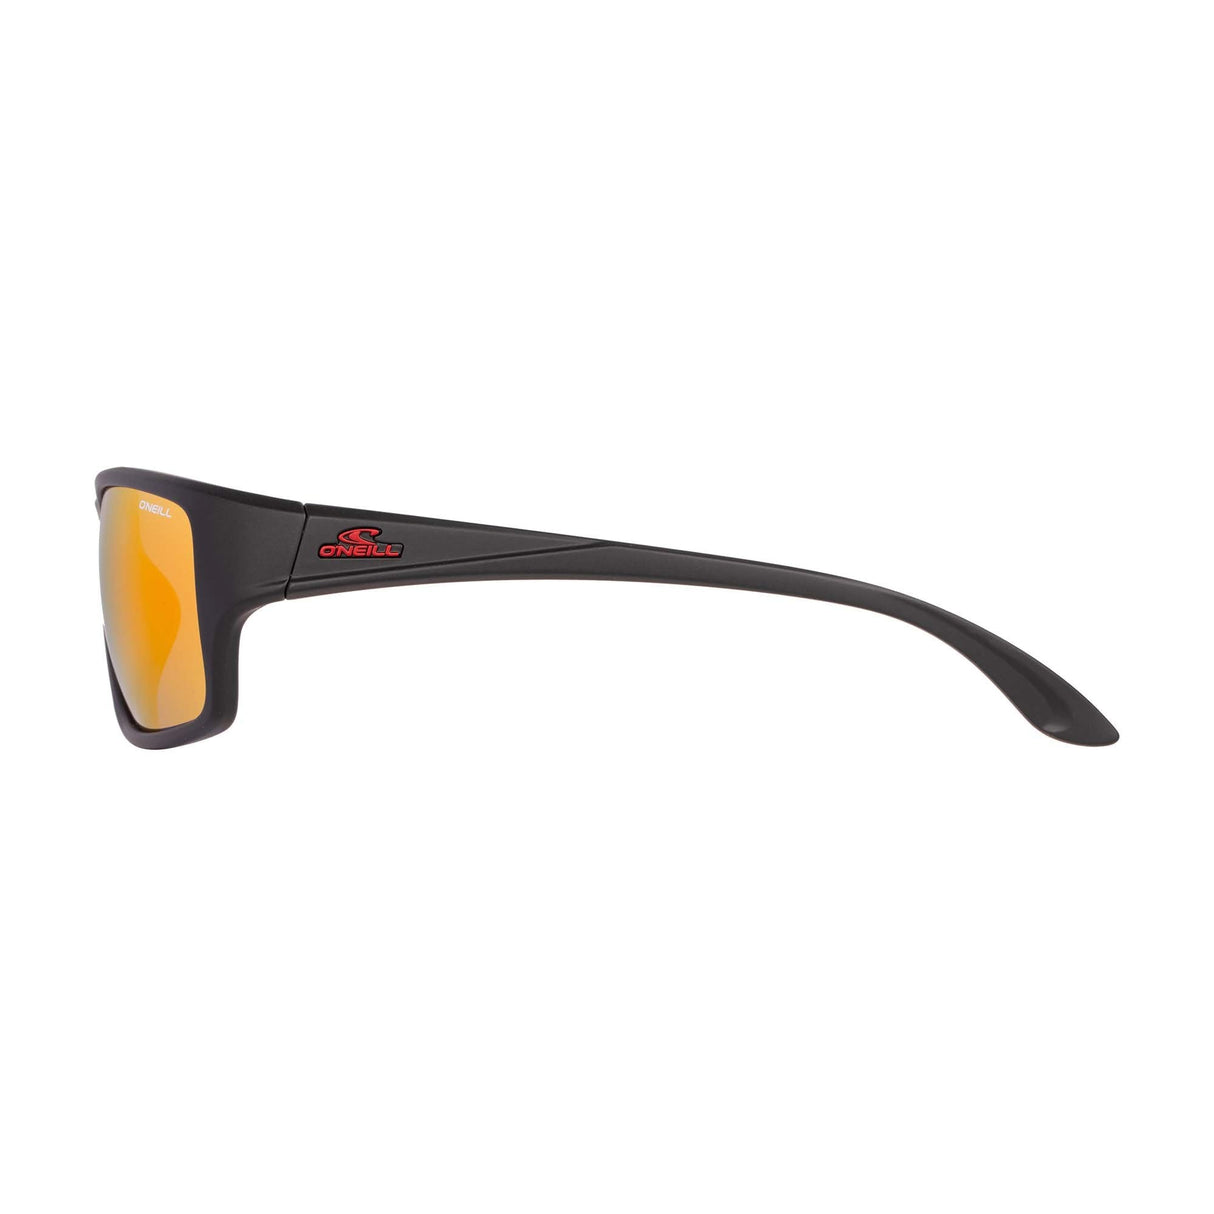 O'Neill 9023 2.0 Sunglasses - 104P-Sunglasses-troggs.com